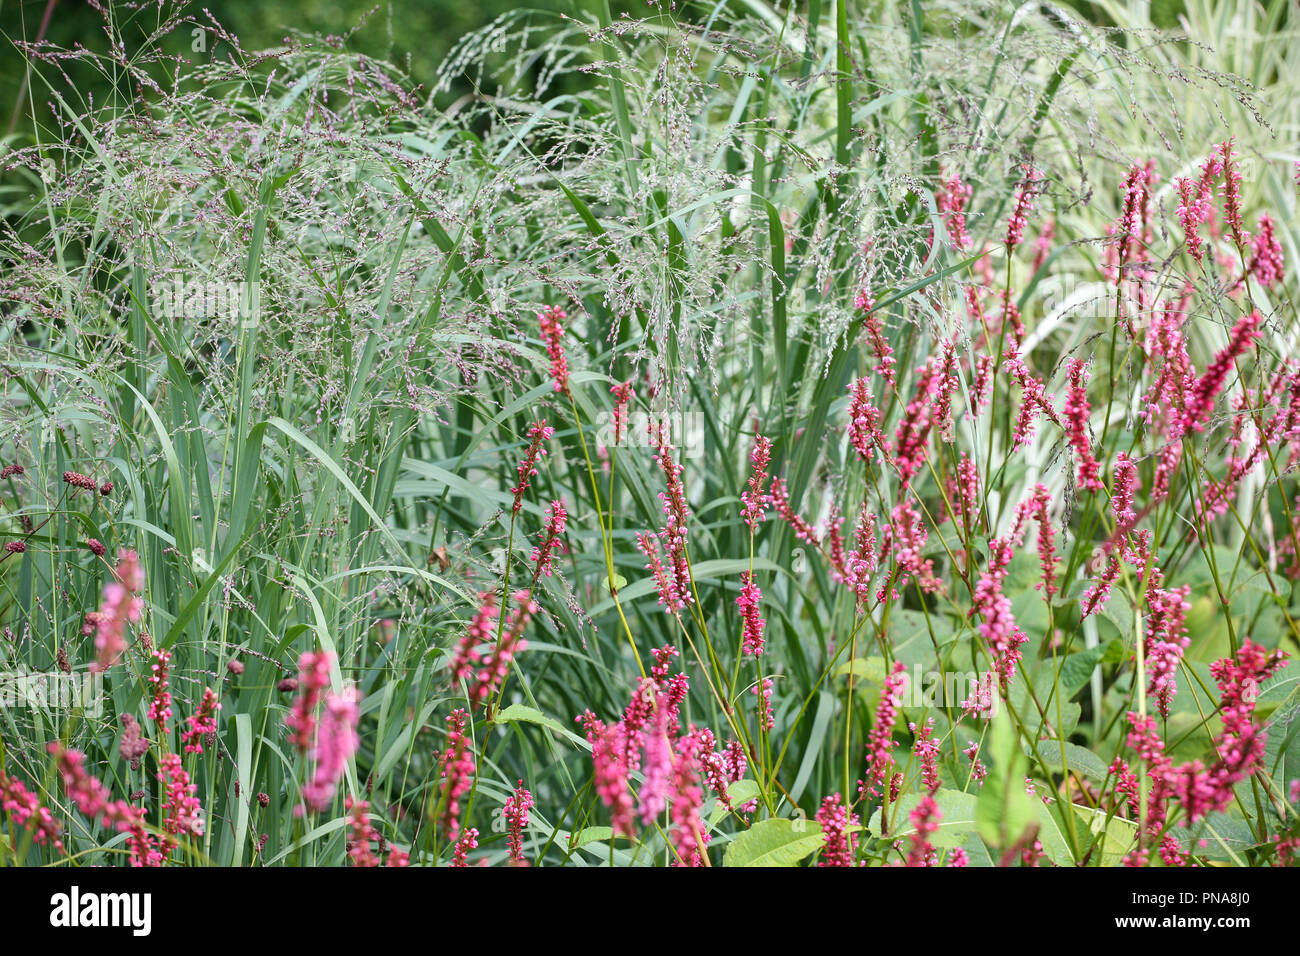 Persicaria amplexicaulis 'Firetail' Stock Photo